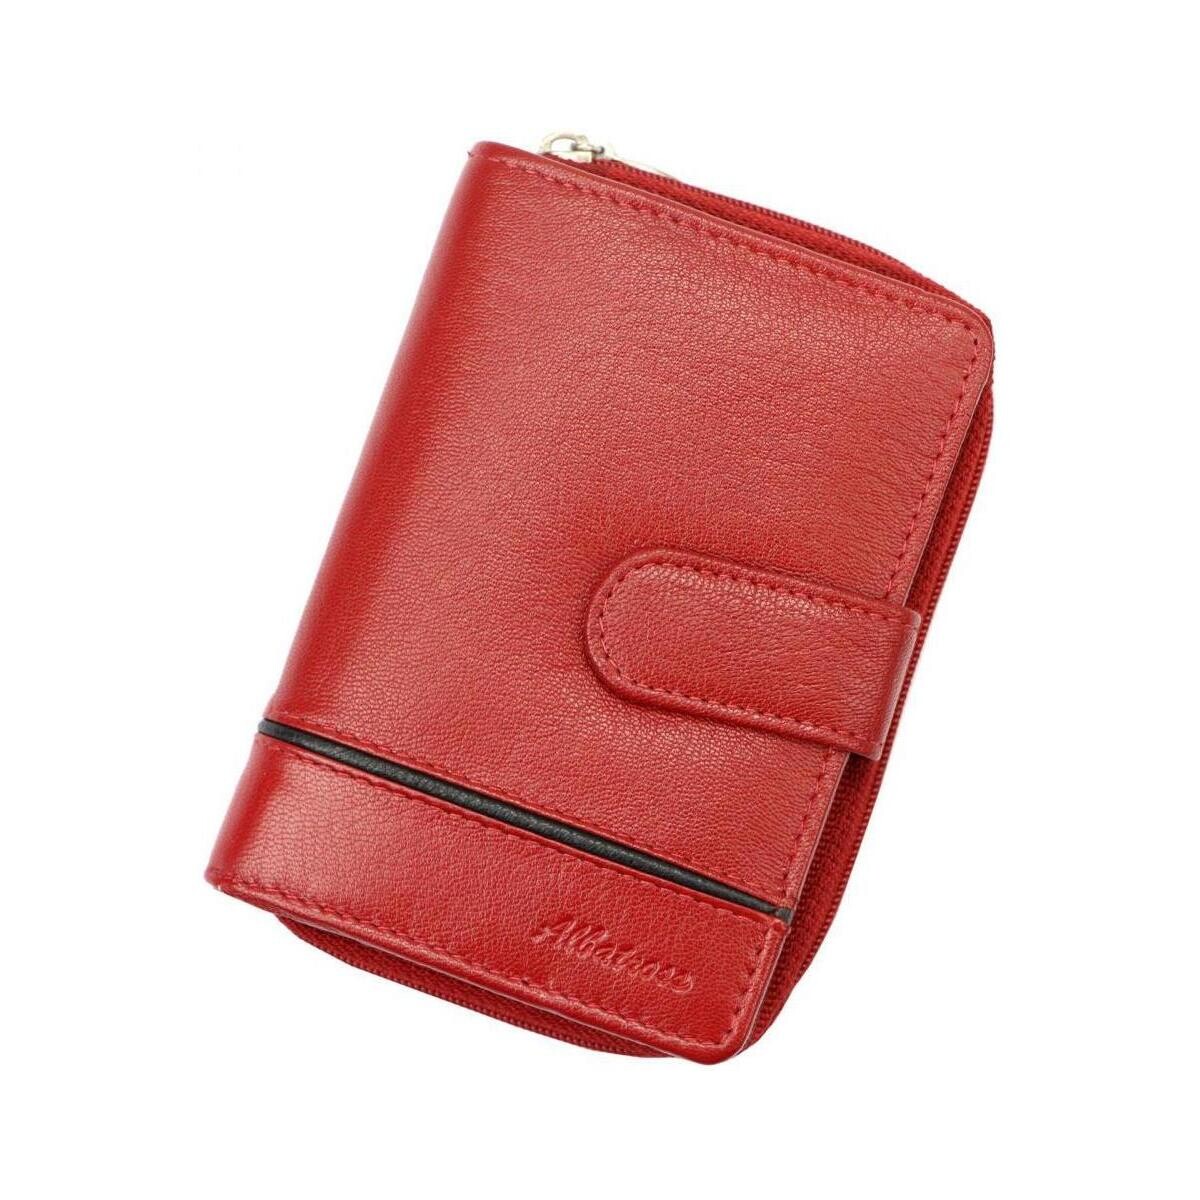 Taška Ženy Náprsní tašky Albatross Kožená červená matná dámská peněženka Červená